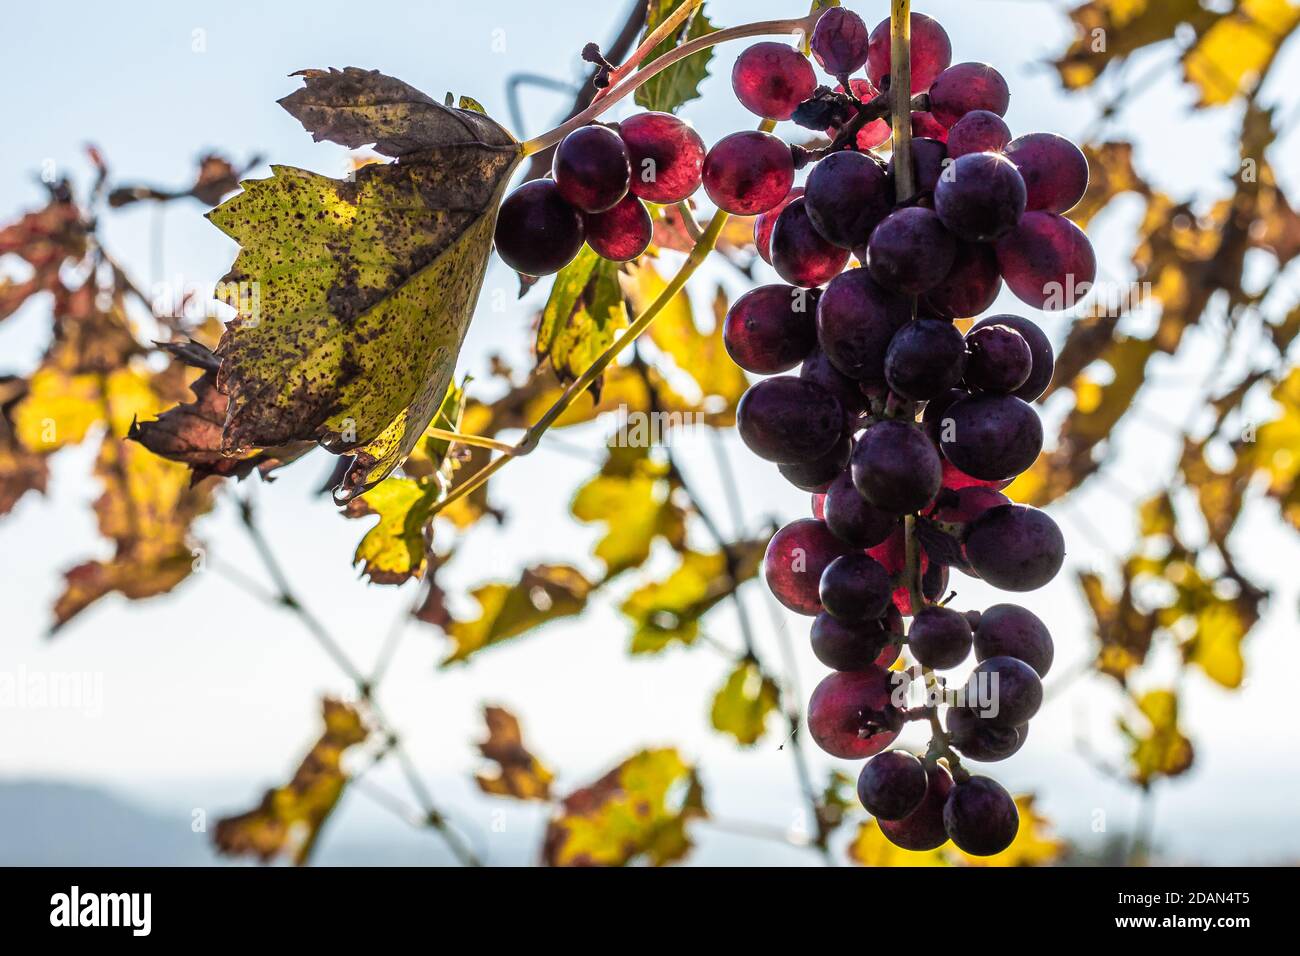 Mazzo di uve del Valpolicella, la zona collinare che precede l'inizio delle Prealpi Veronesi. Foto Stock